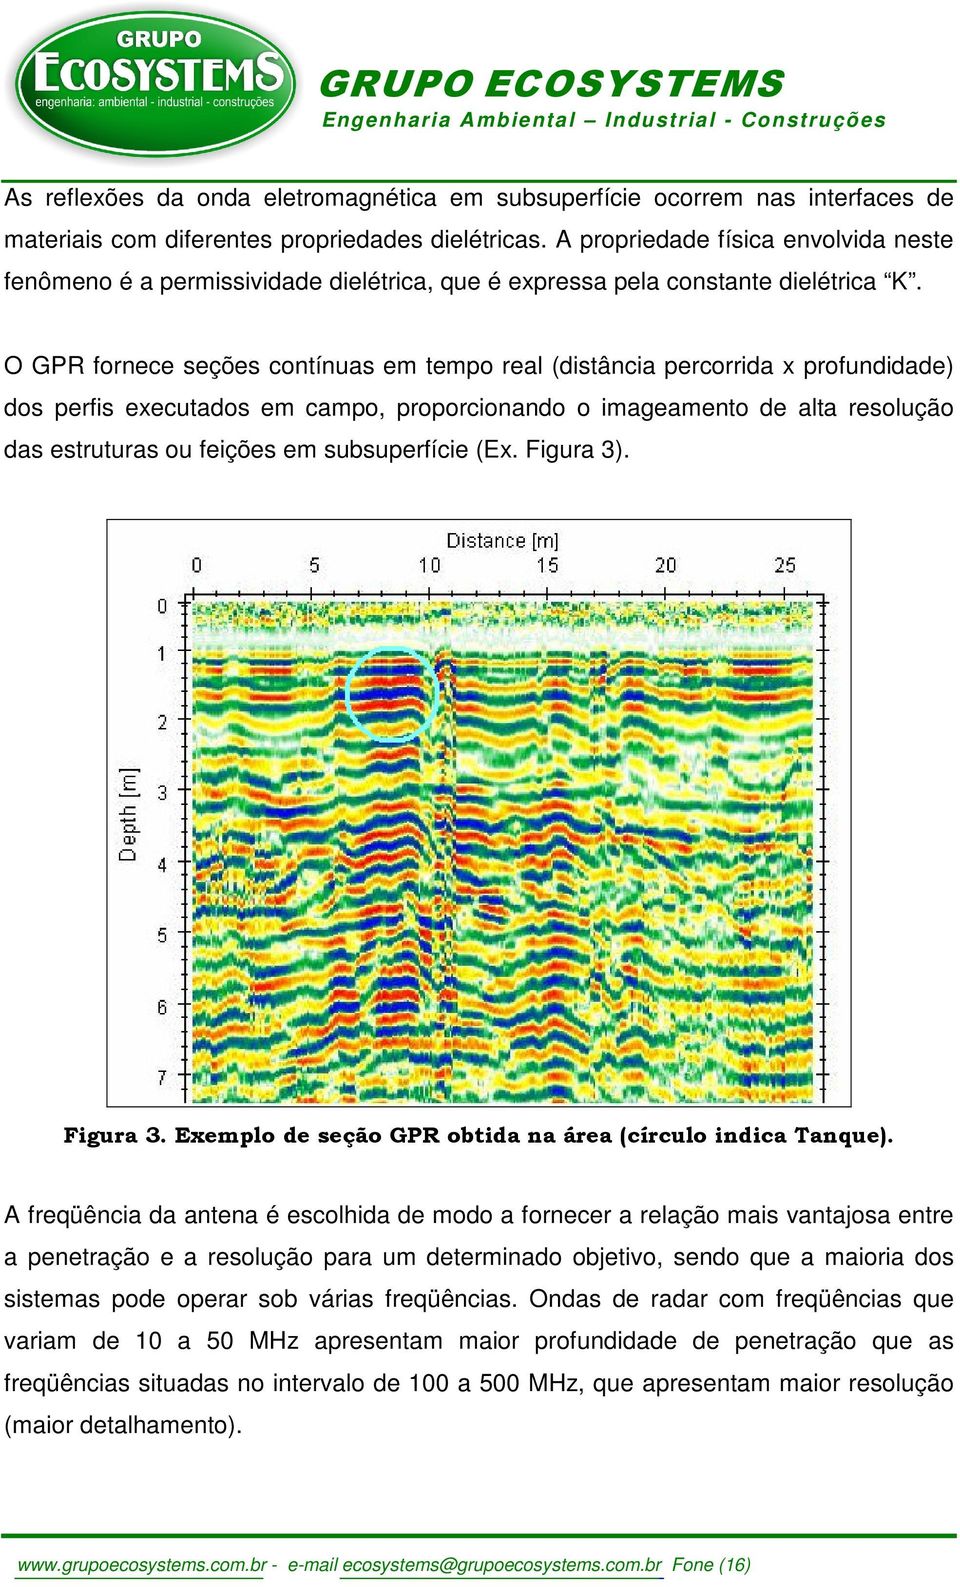 O GPR fornece seções contínuas em tempo real (distância percorrida x profundidade) dos perfis executados em campo, proporcionando o imageamento de alta resolução das estruturas ou feições em